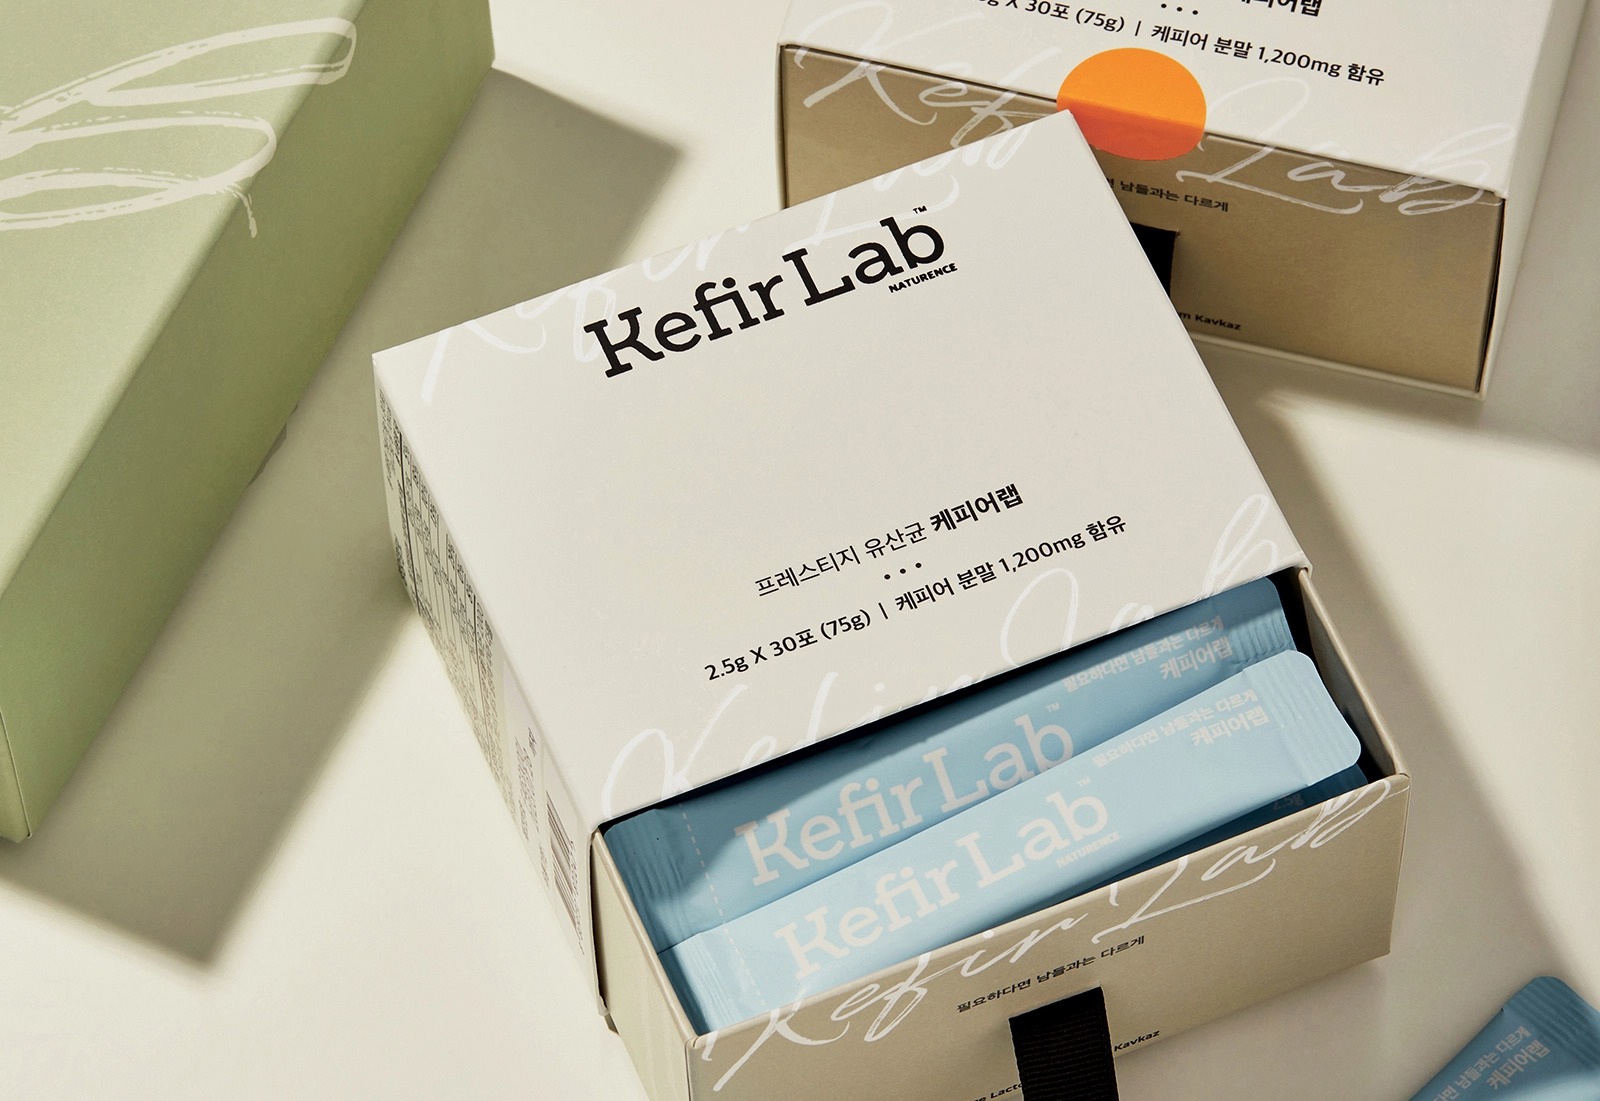 Kefir Lab保健食品包装设计